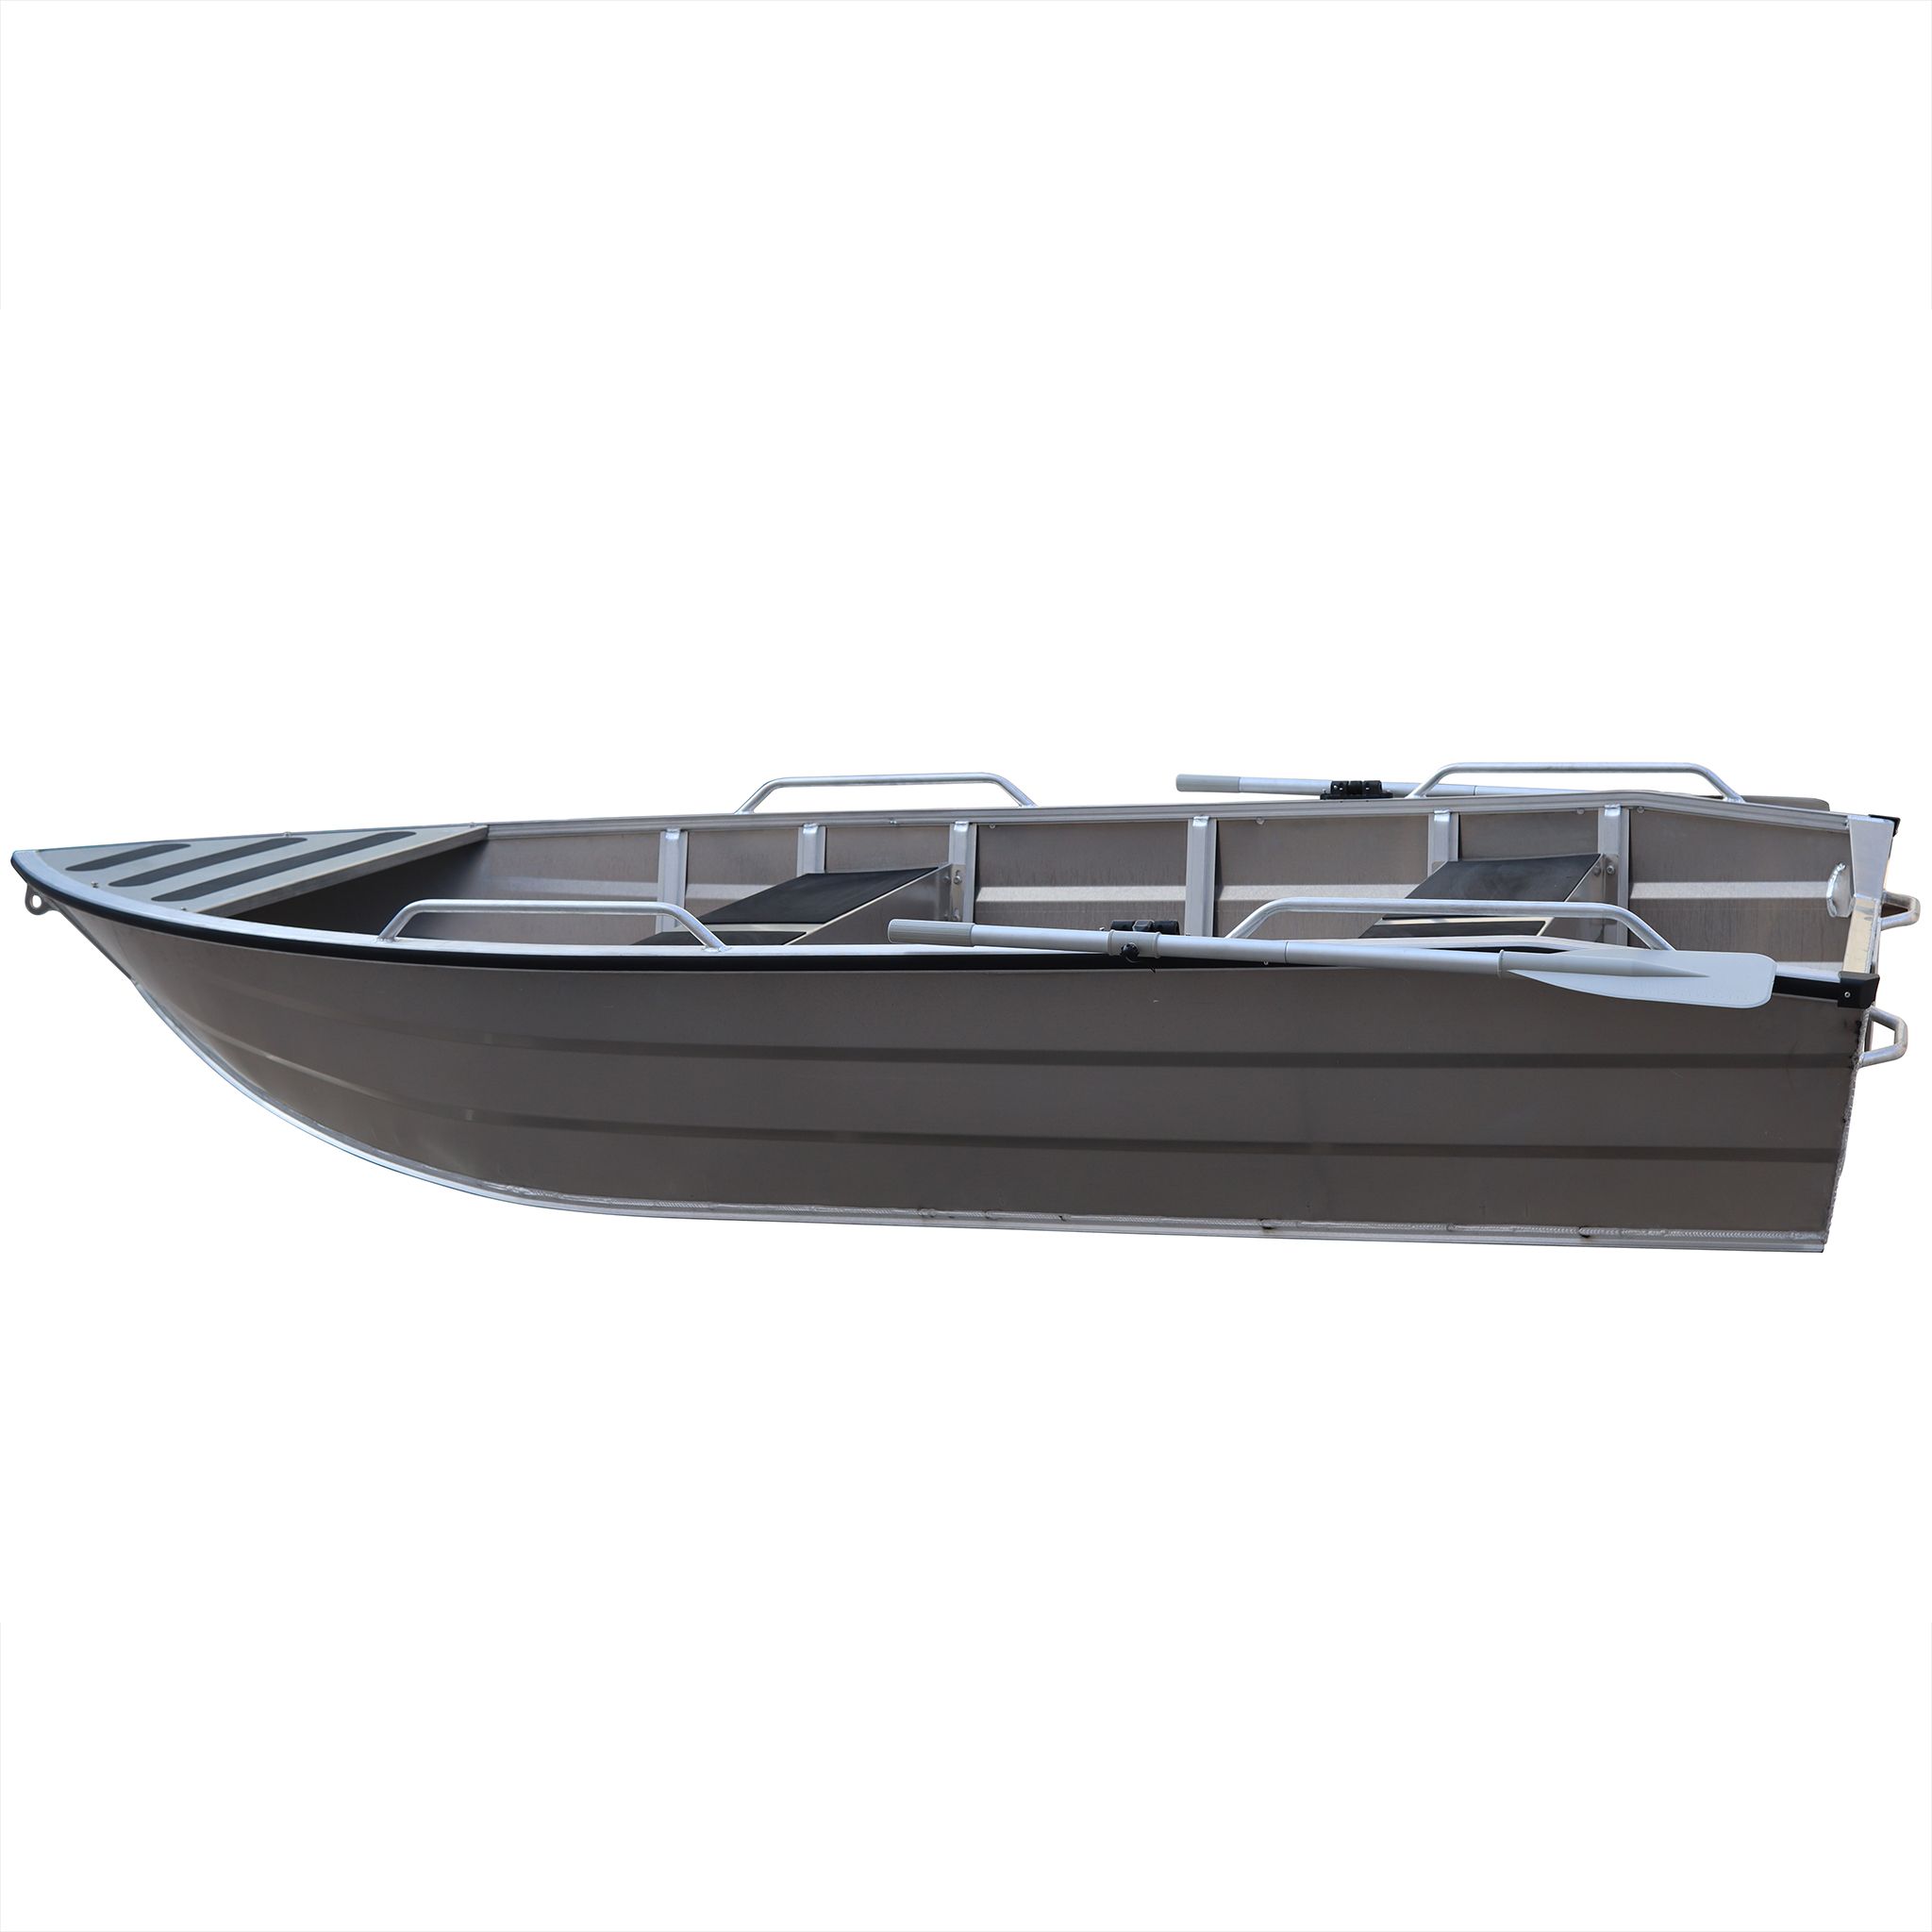 Aluminiumbåt 3,8m | 4 personer | 2mm skrovtjocklek | Lyfco